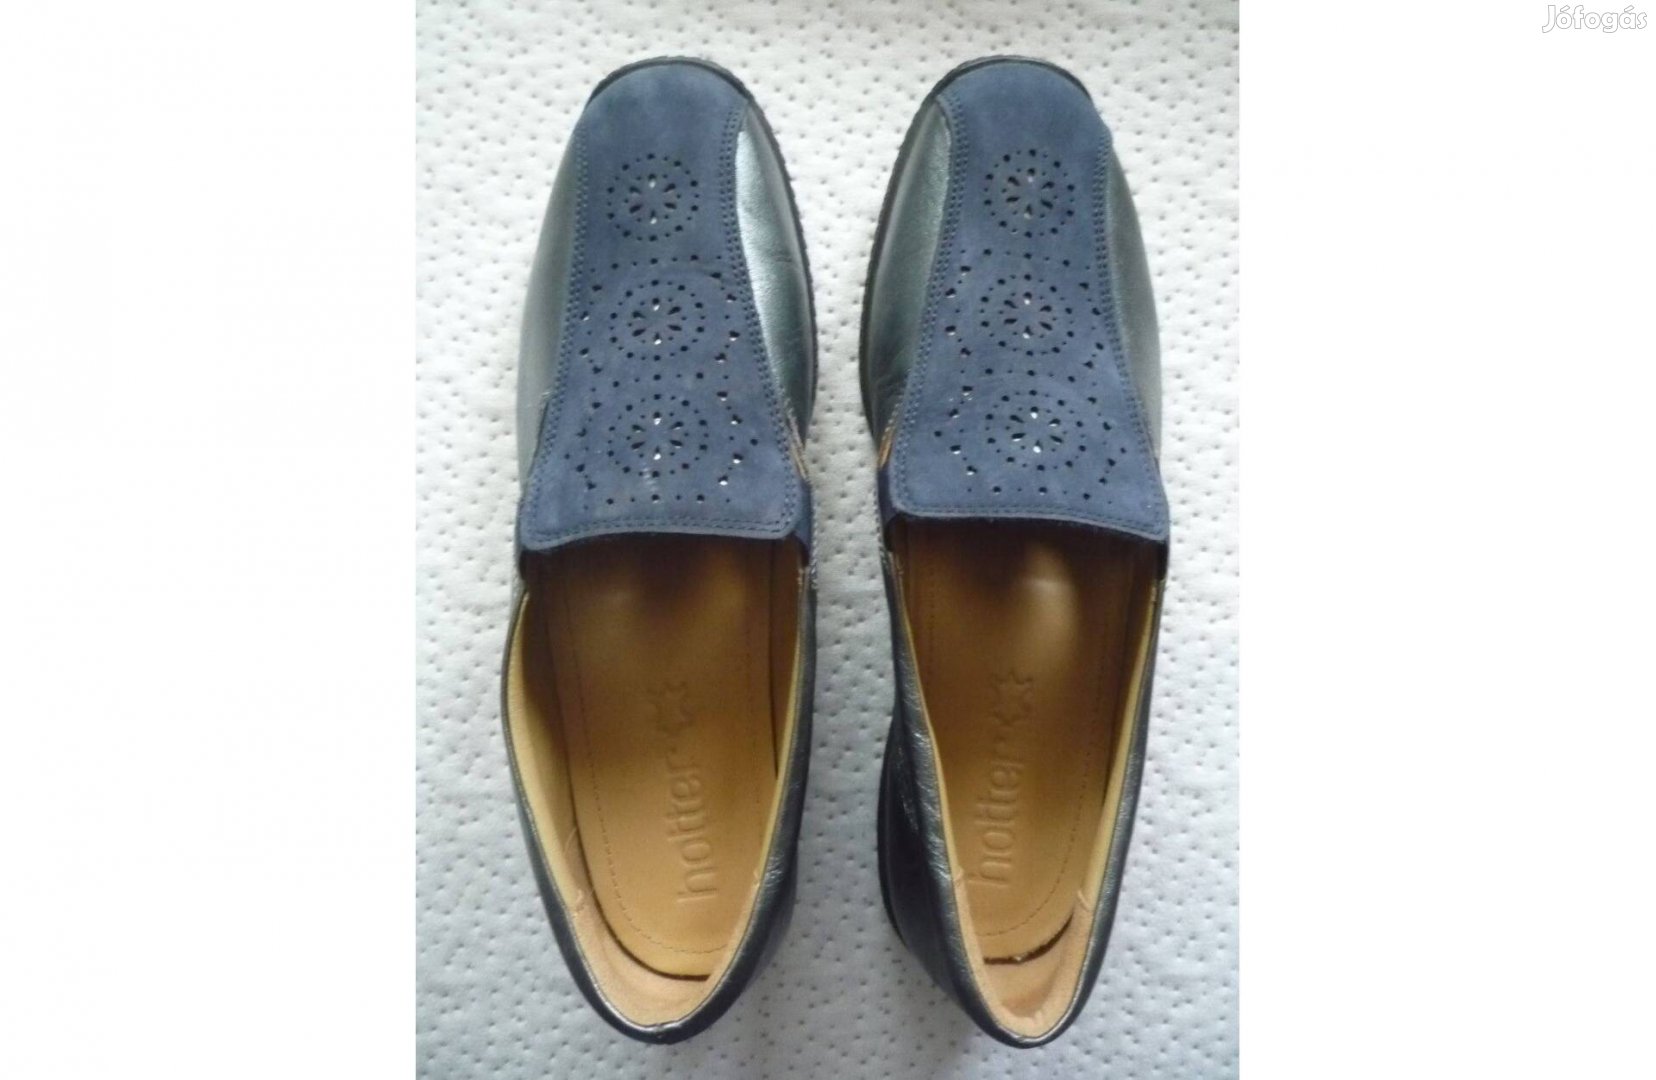 Hotter"Angol középkék bőr és hasított bőr papucscipő 40,5-ös méretben